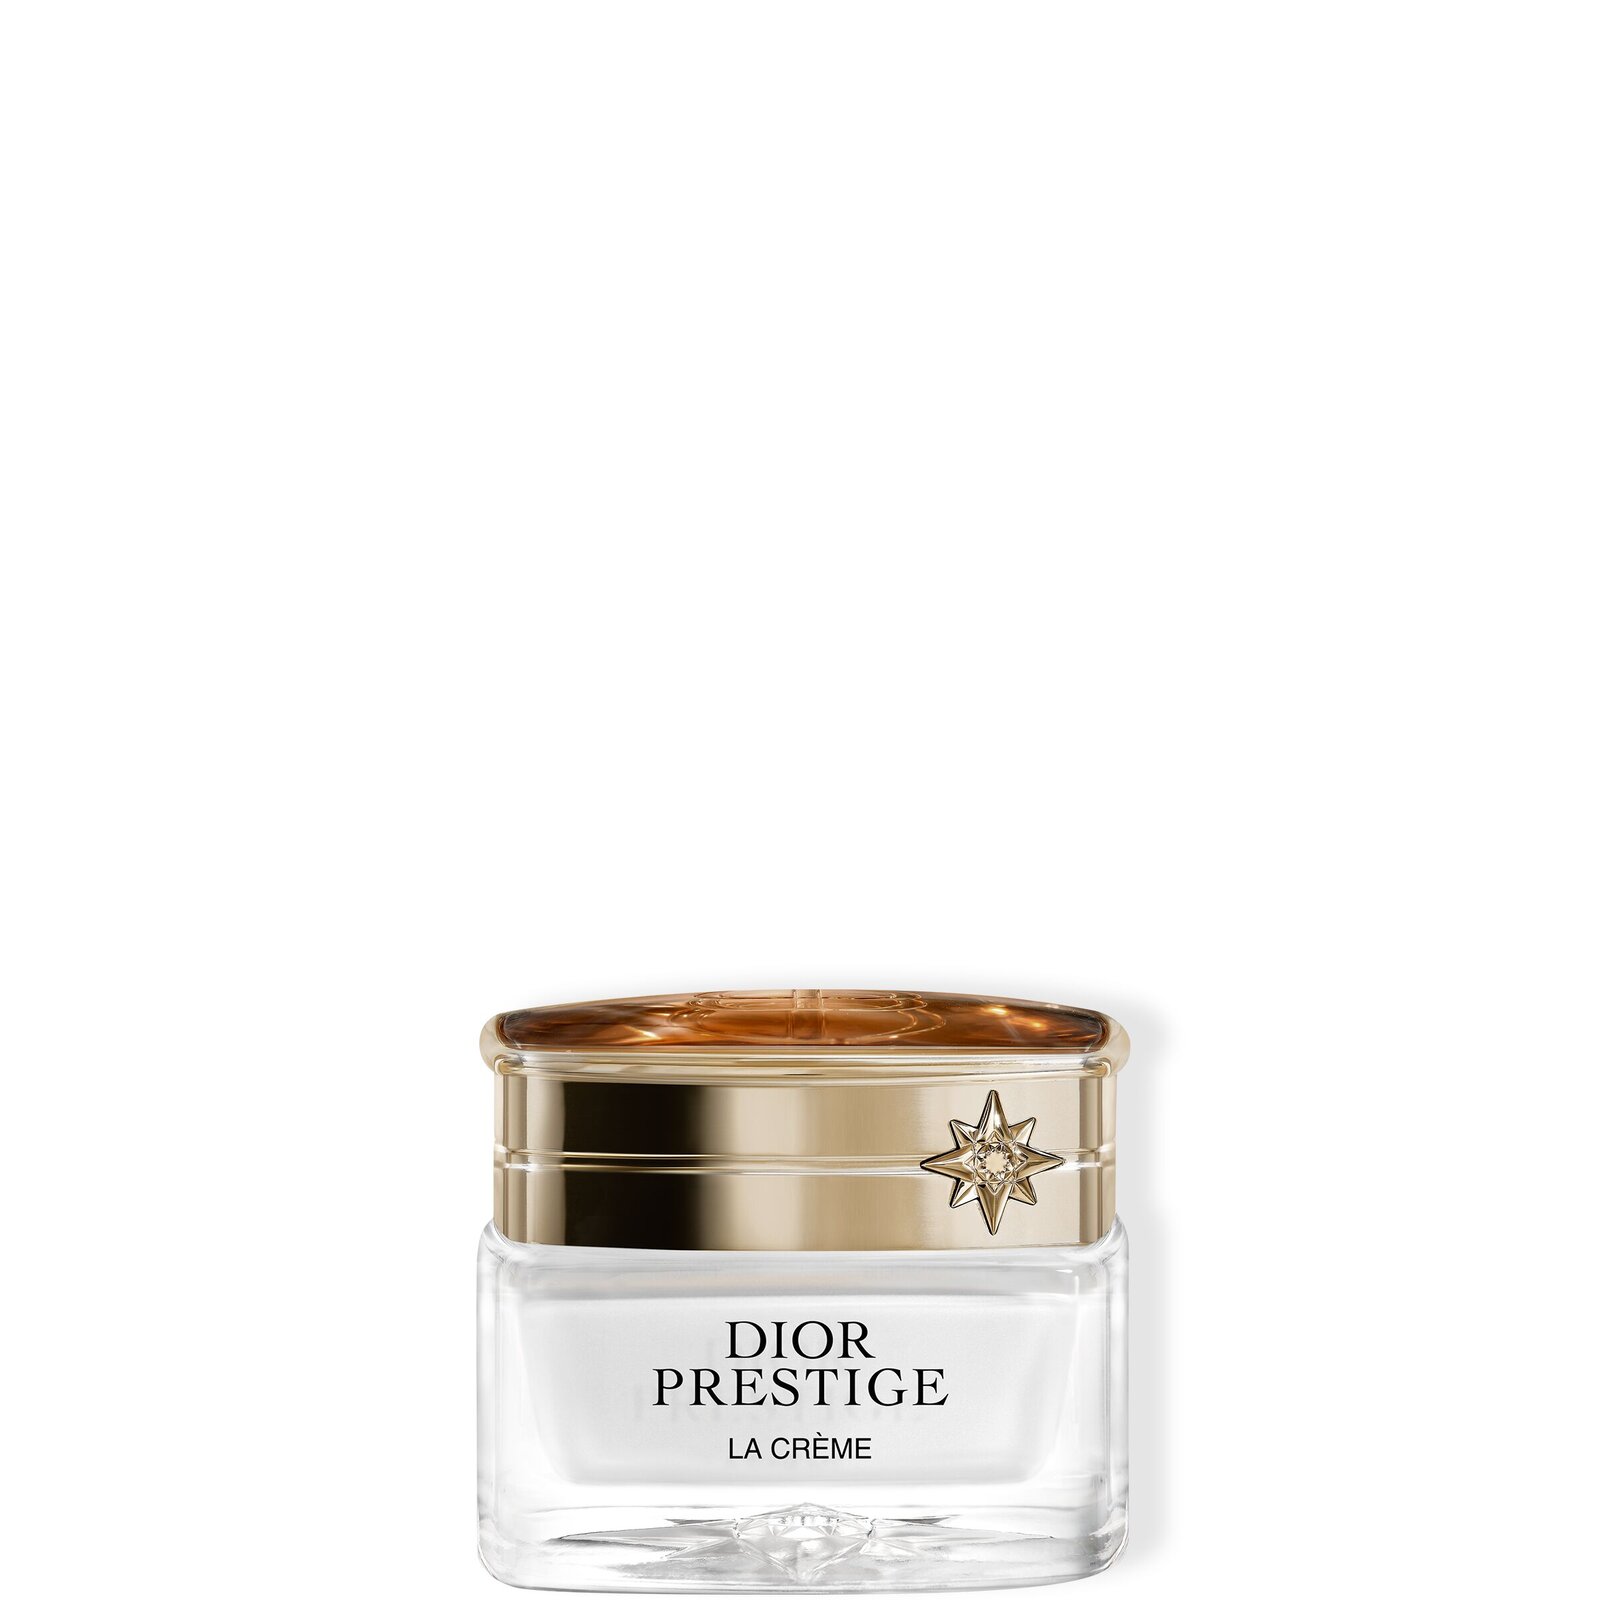 Dior Prestige La Crème Texture Essentielle Крем с универсальной текстурой для лица, шеи и зоны декольте